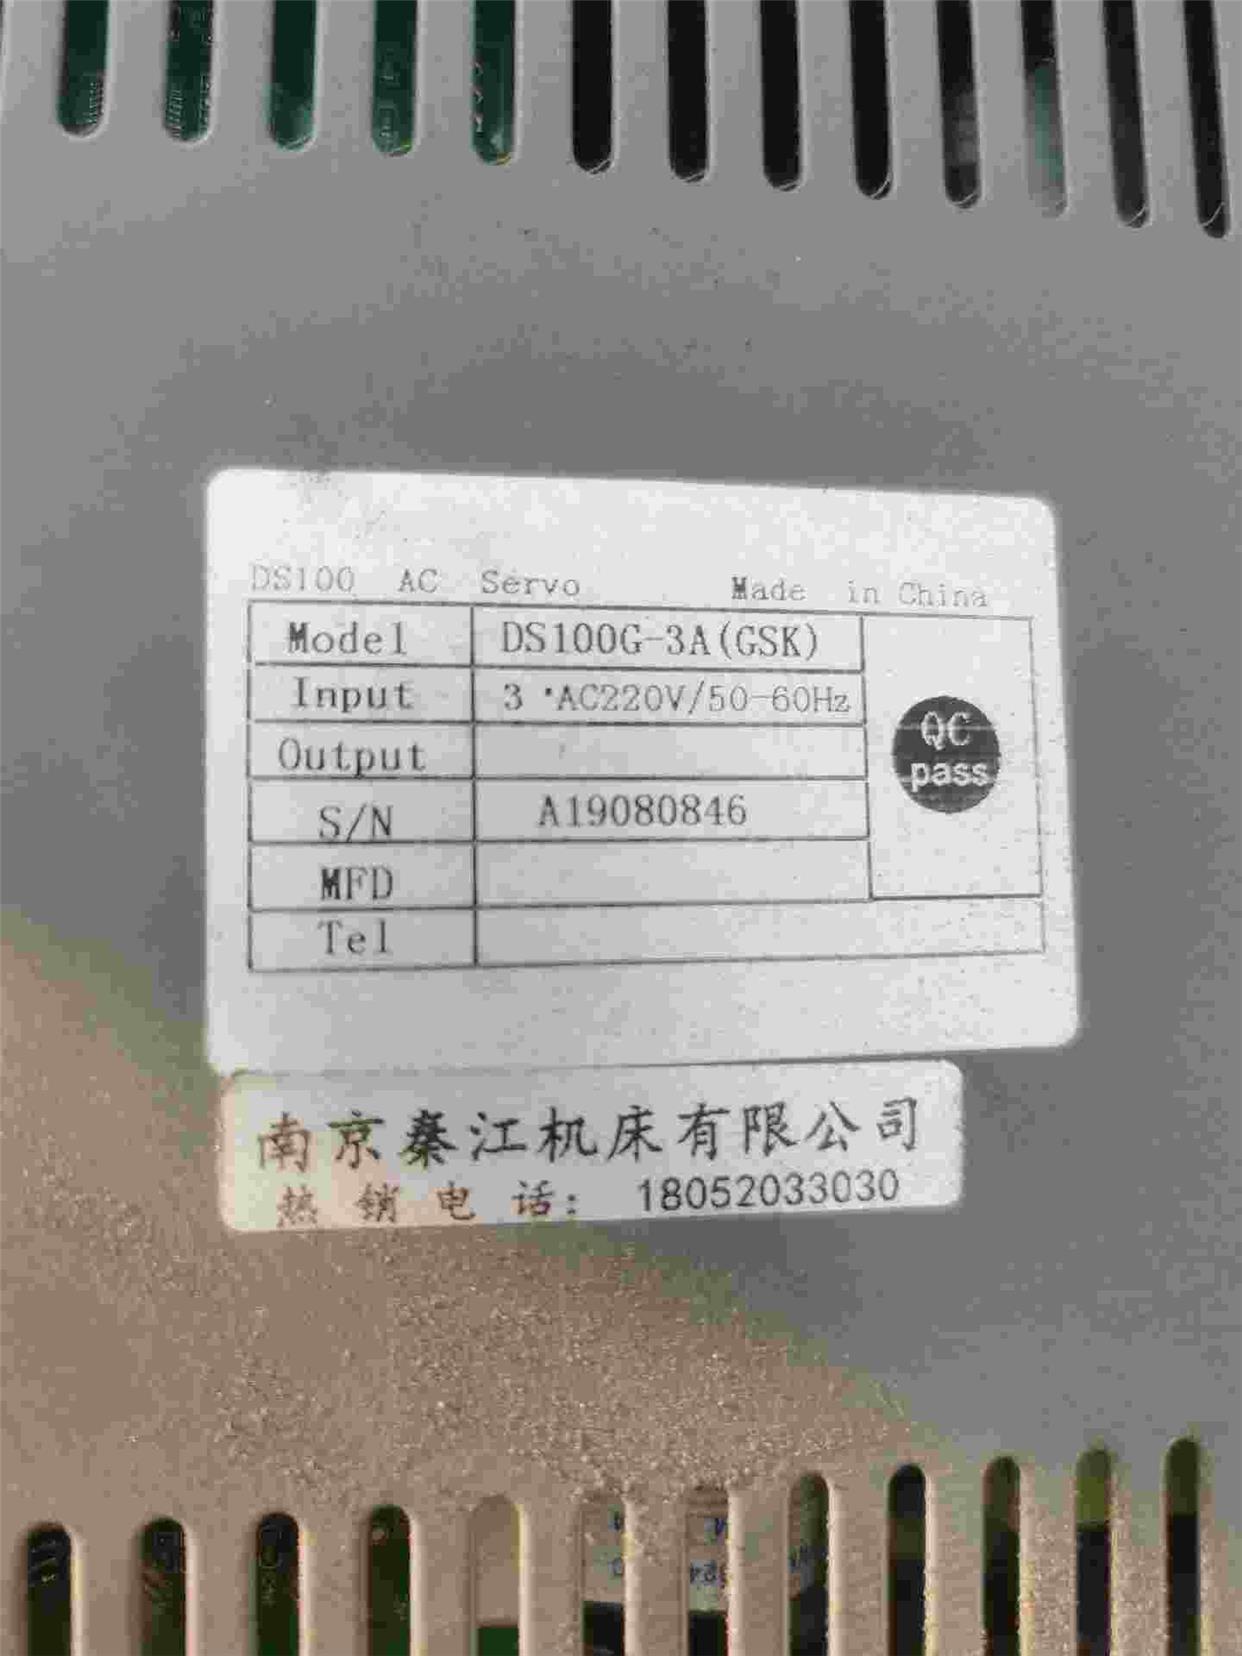 秦江伺服驱动器DS100G-3A 成色漂亮如图所示，包好包议价